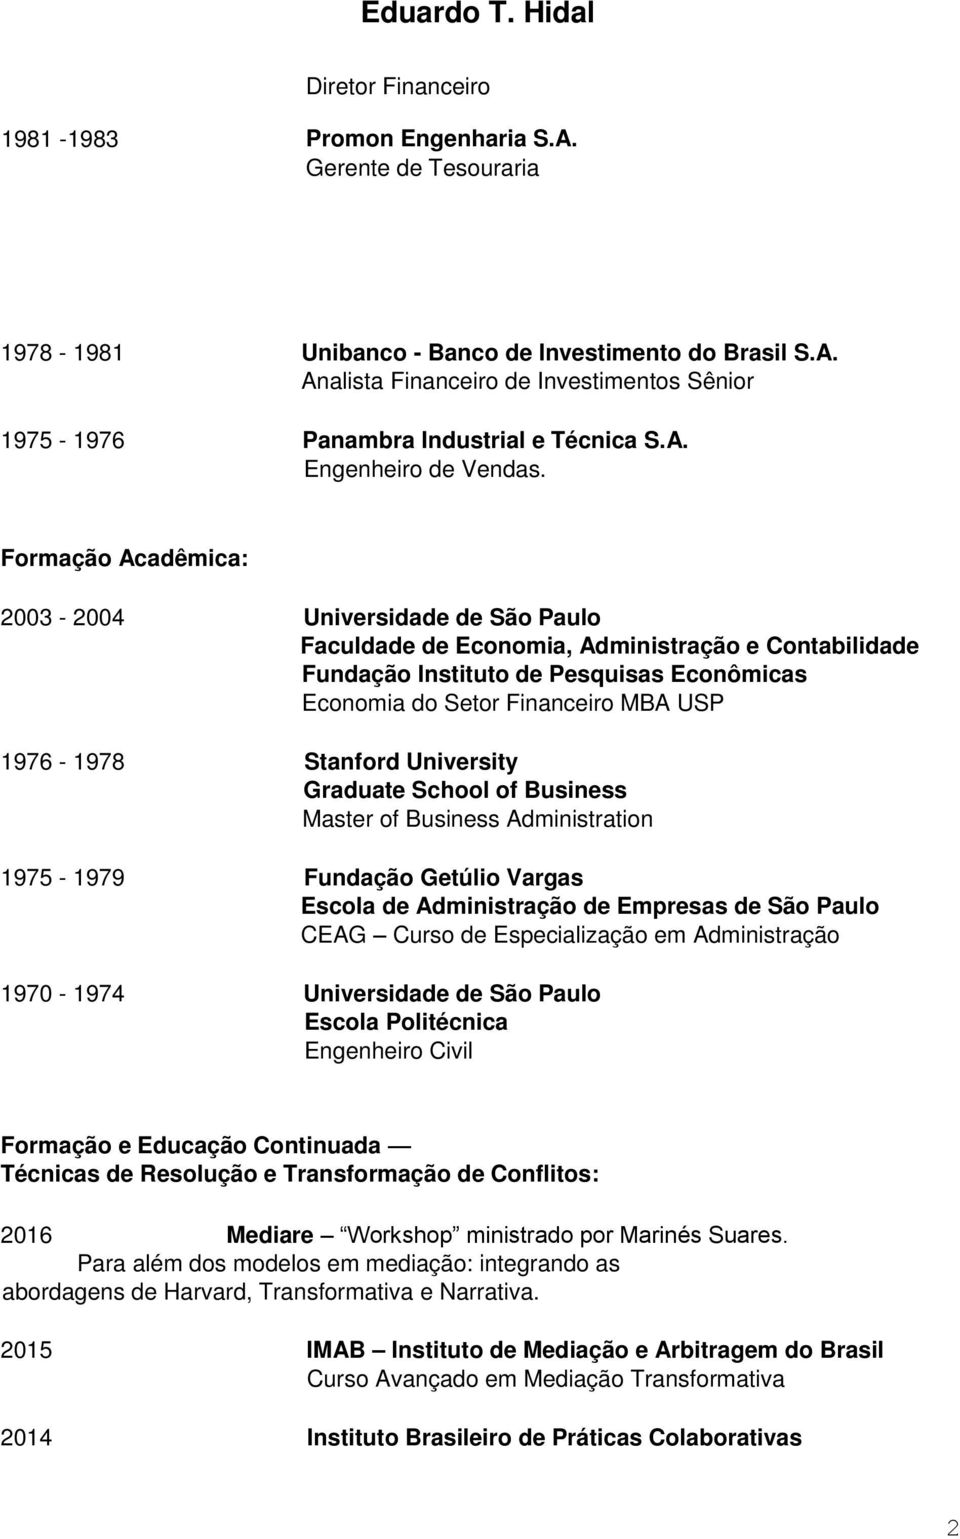 Formação Acadêmica: 2003-2004 Universidade de São Paulo Faculdade de Economia, Administração e Contabilidade Fundação Instituto de Pesquisas Econômicas Economia do Setor Financeiro MBA USP 1976-1978